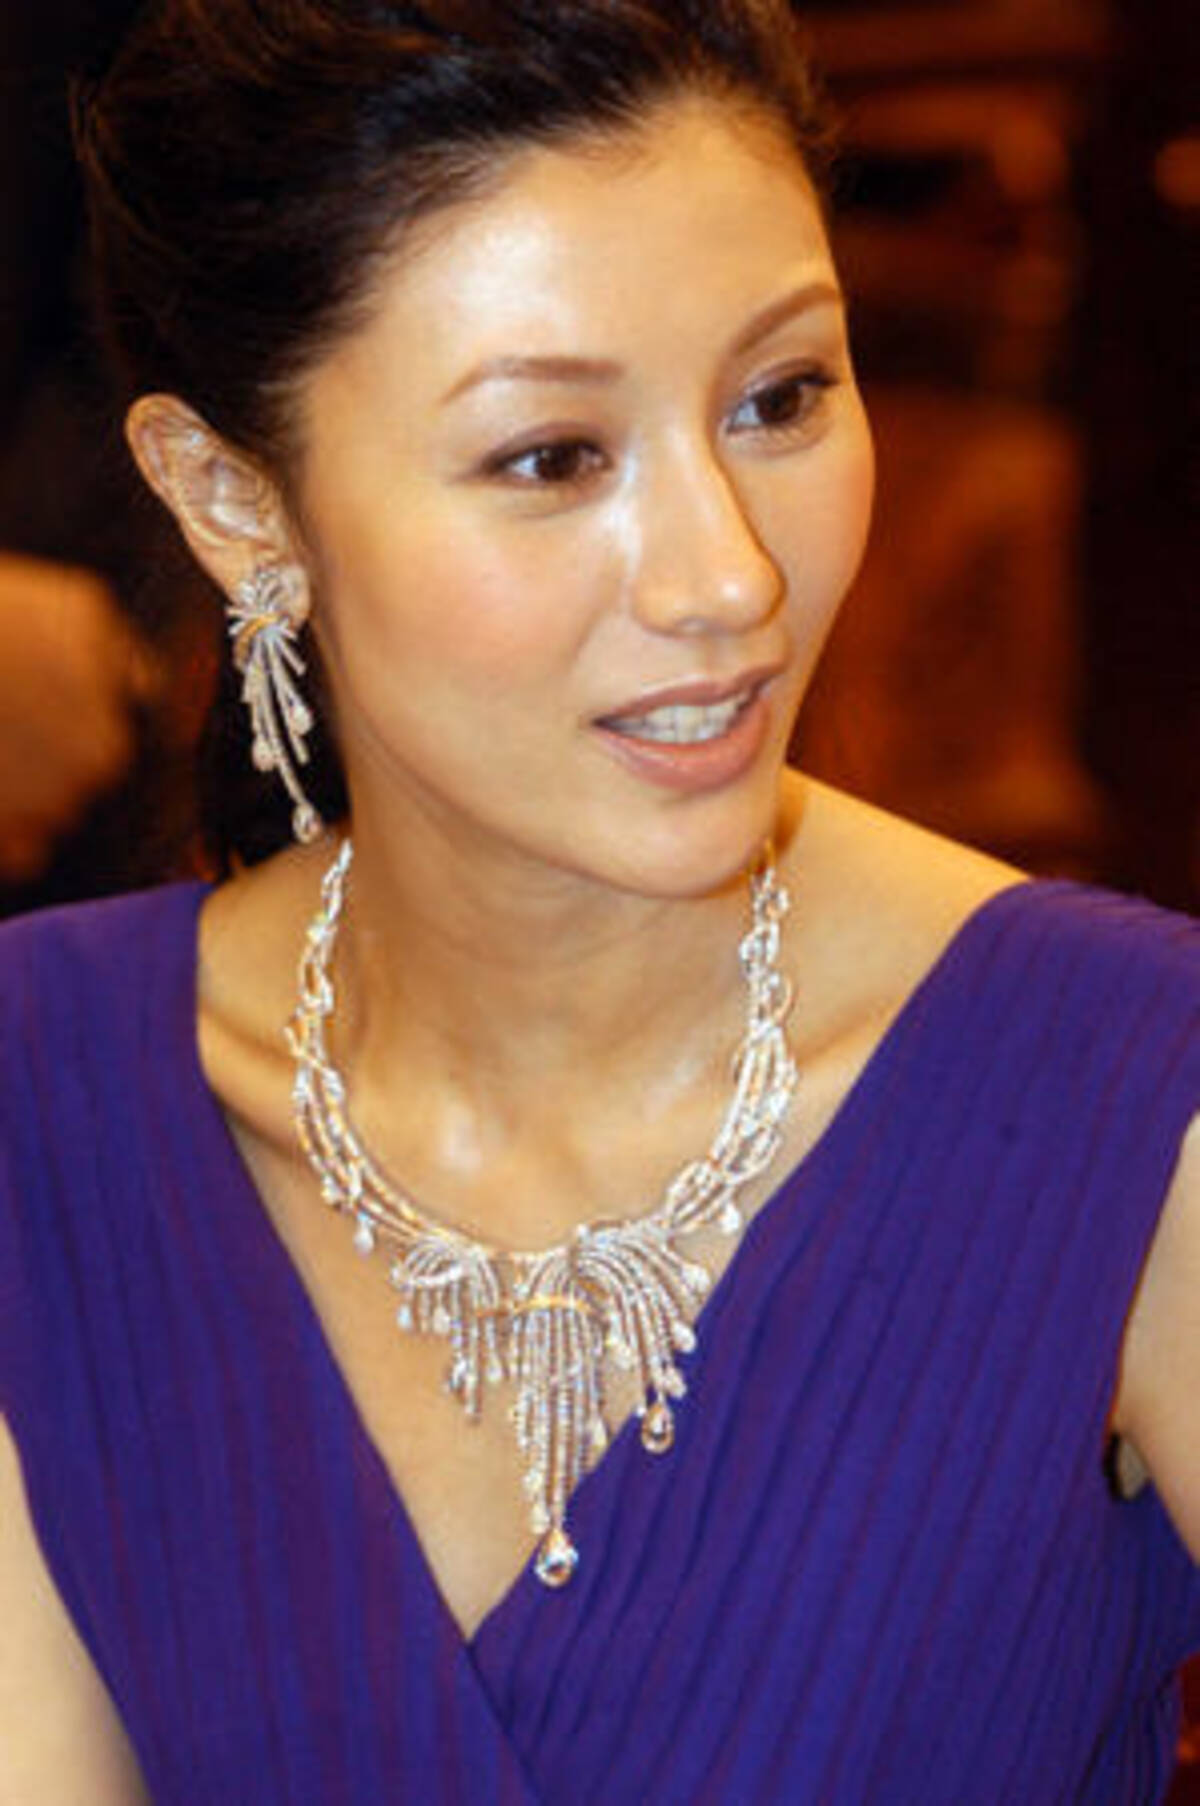 中華芸能 美人女優ミシェル リー 香港富豪と結婚 子作り準備も 08年11月11日 エキサイトニュース